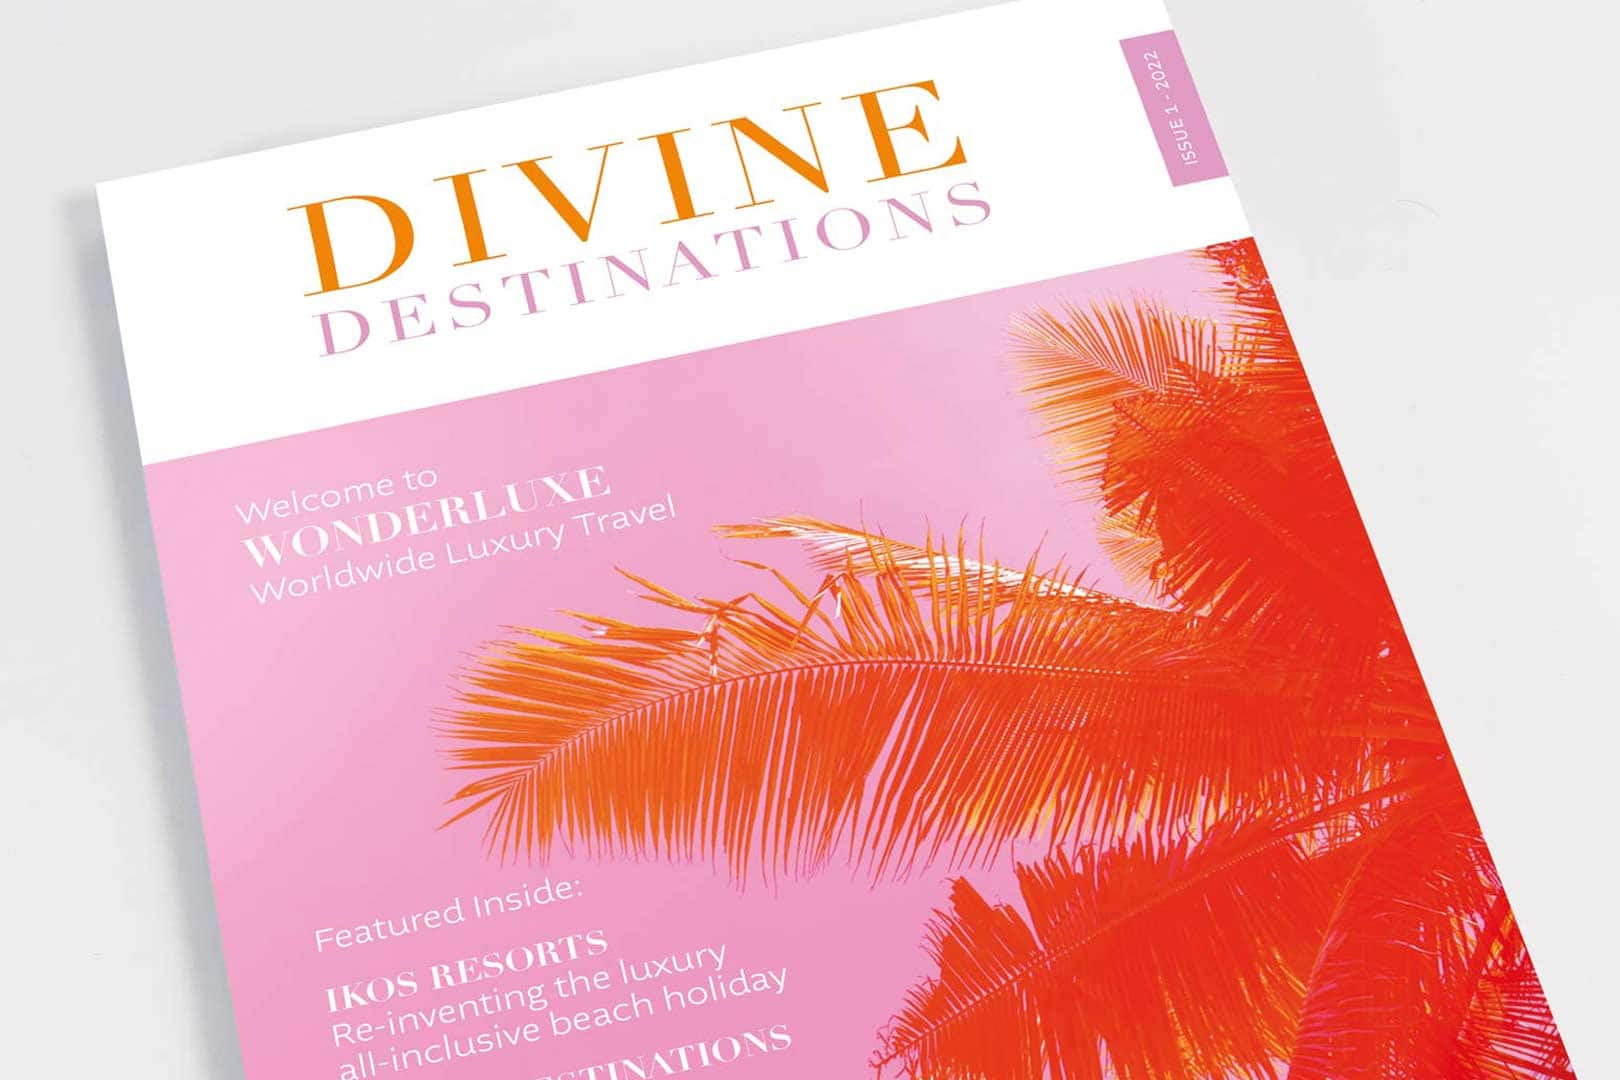 Divine Destinations magazine by wonderluxe